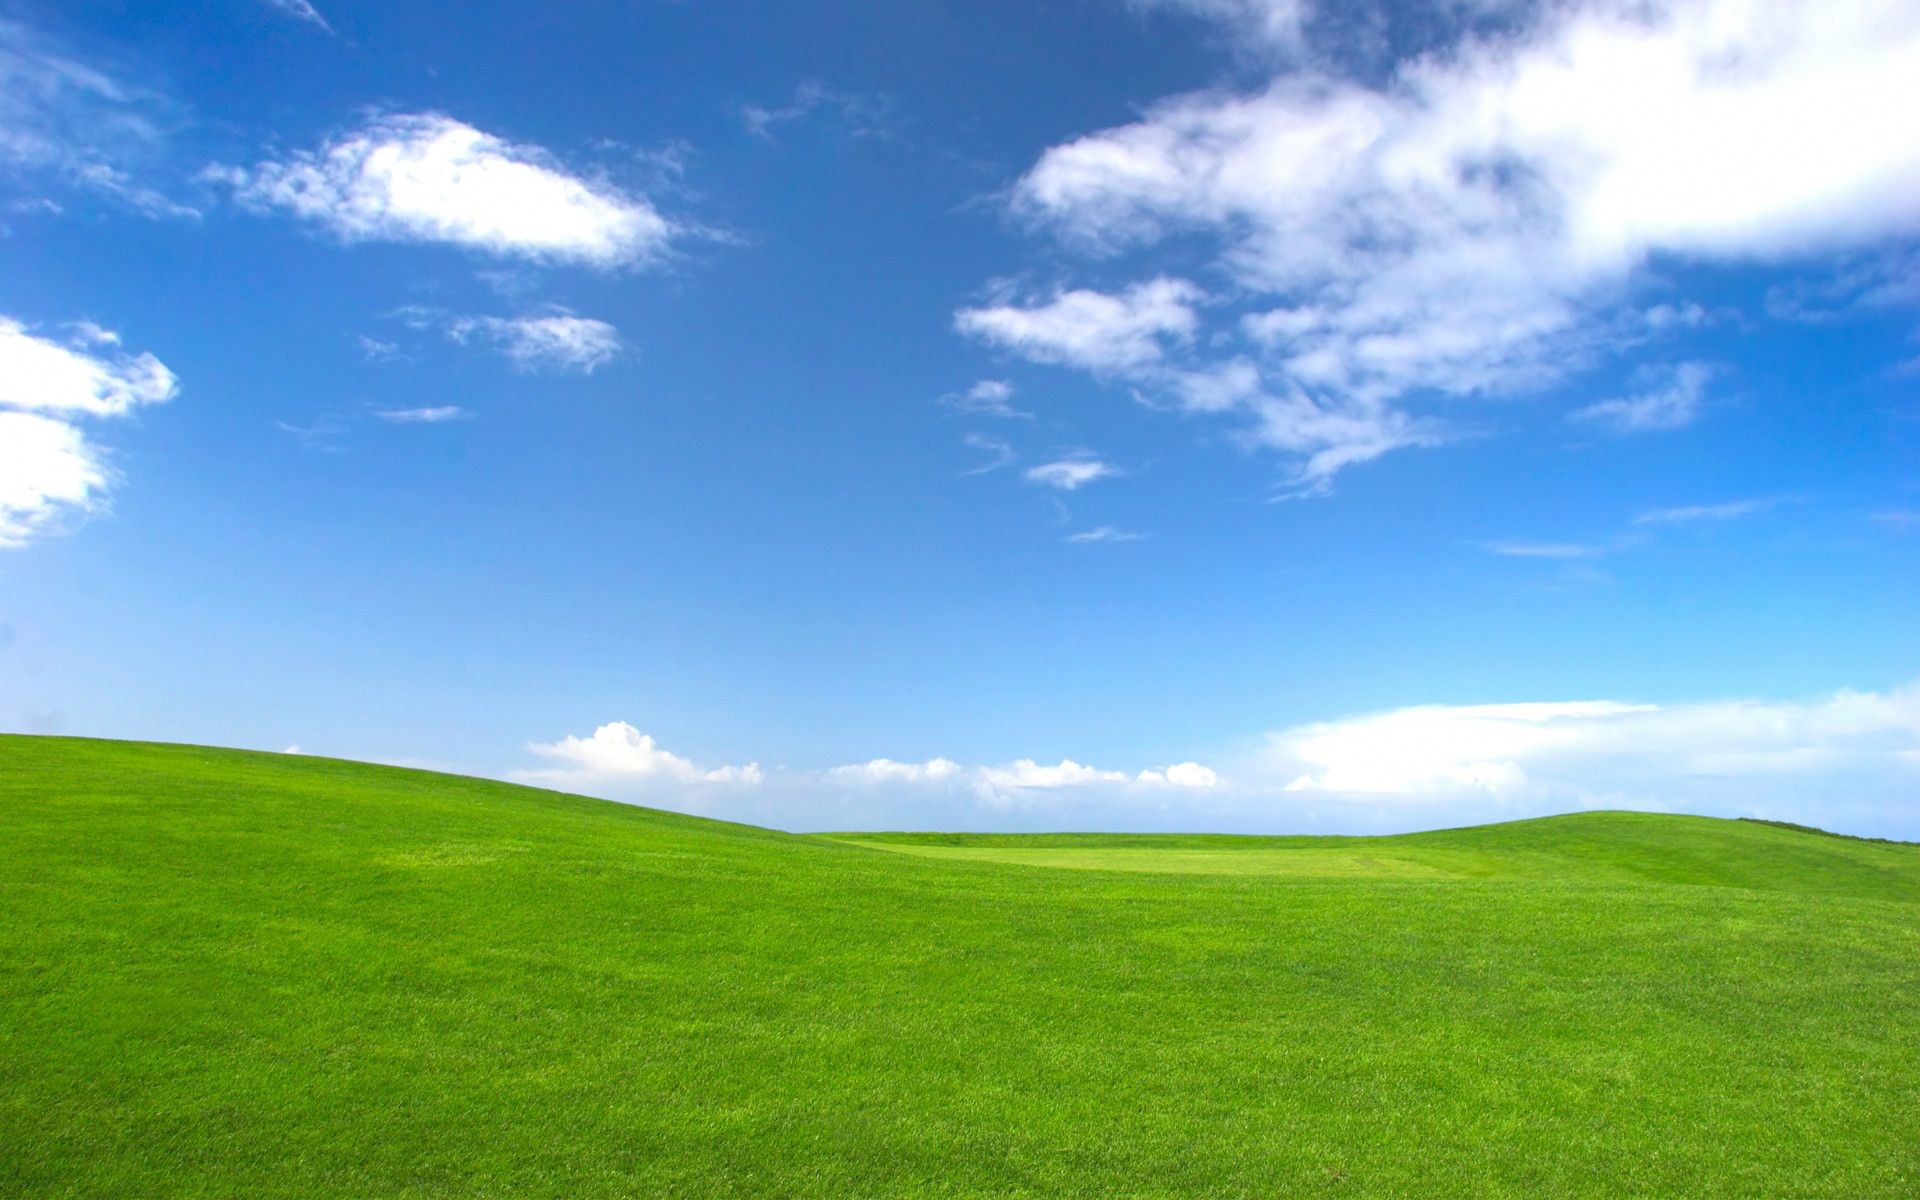 Bạn muốn tìm hình nền desktop Windows XP miễn phí để cập nhật cho máy tính của mình? Hãy xem qua bộ sưu tập những hình nền đẹp và tuyệt vời cho desktop được thiết kế đặc biệt cho hệ điều hành Windows XP. Hình ảnh này sẽ làm cho máy tính của bạn trở nên đẹp hơn và thu hút hơn.